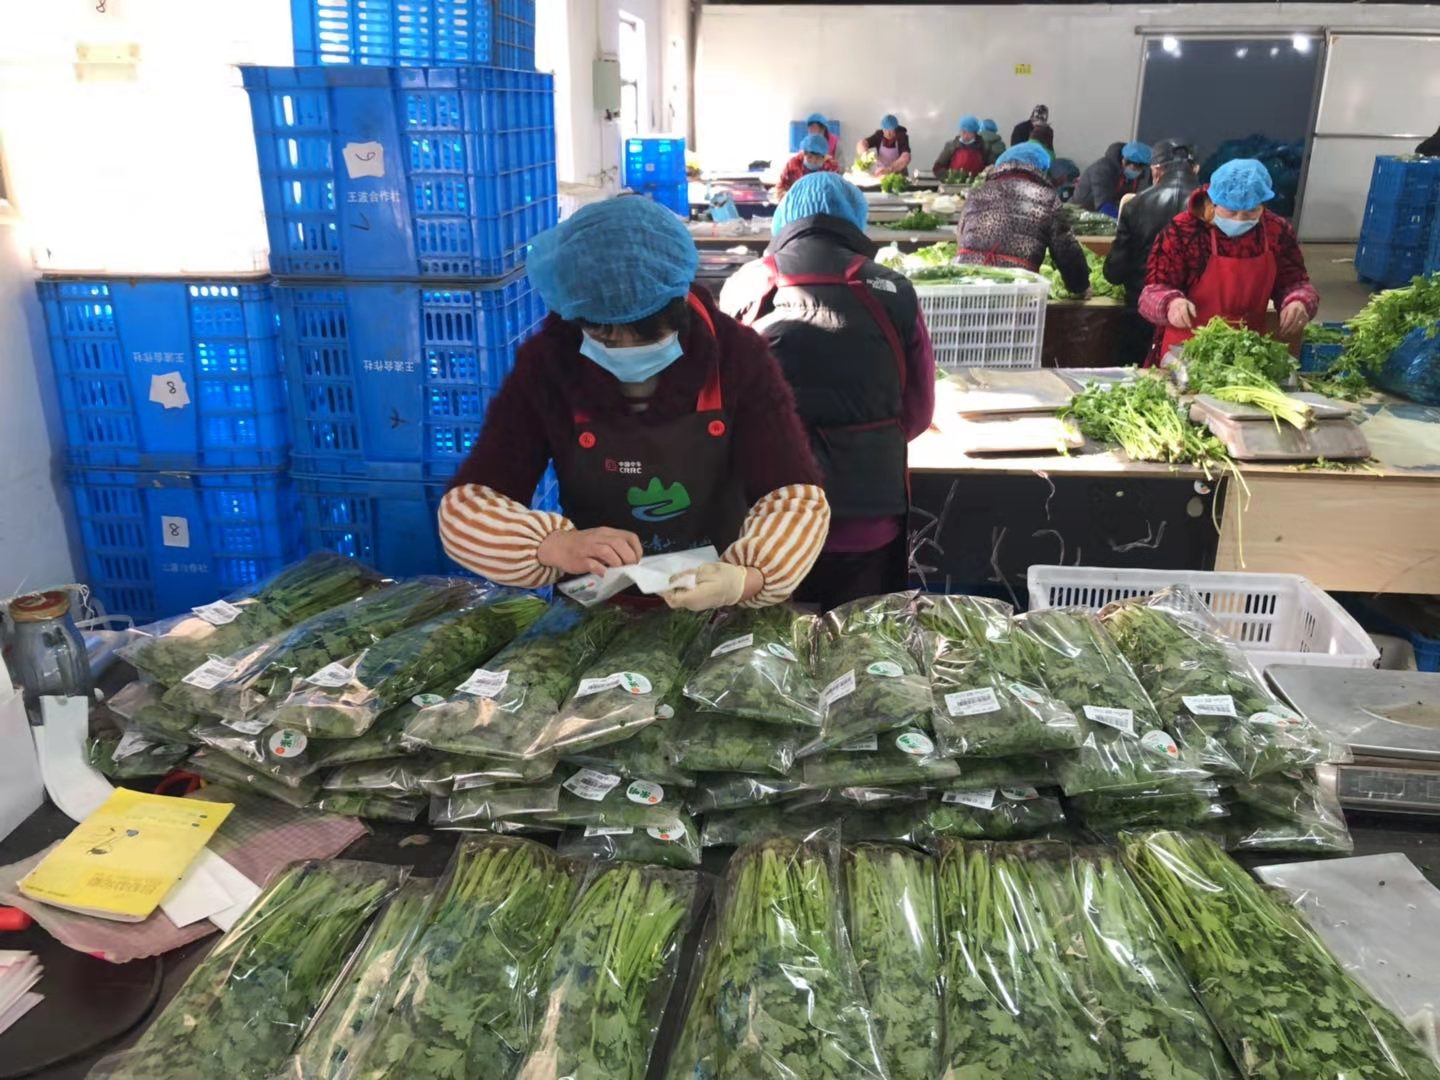 在位于竖新镇的上海静捷蔬菜专业合作社,加工包装车间内也是如火如荼